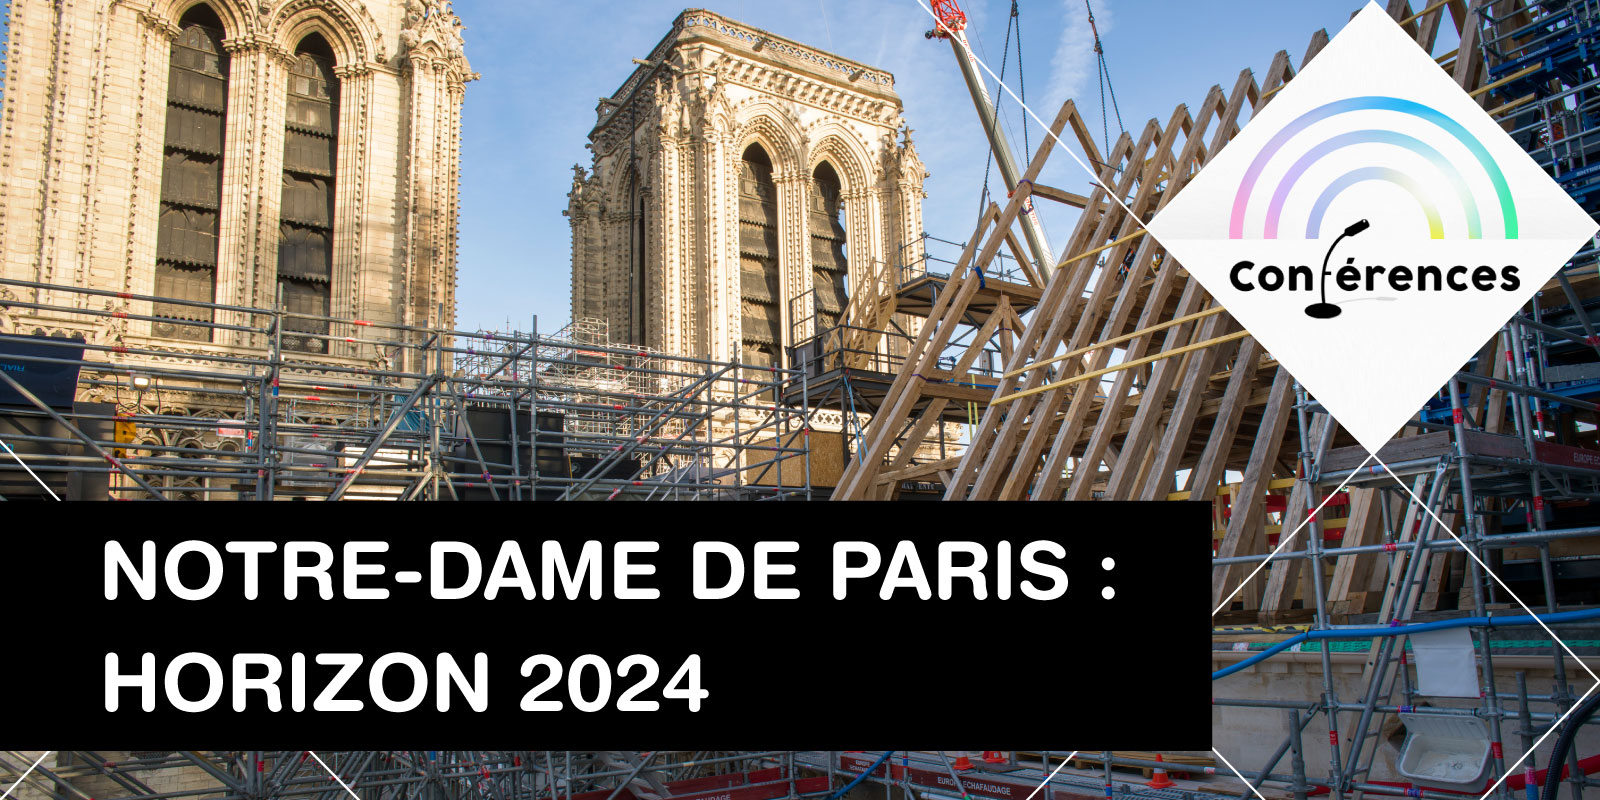 Notre-Dame de Paris : horizon 2024